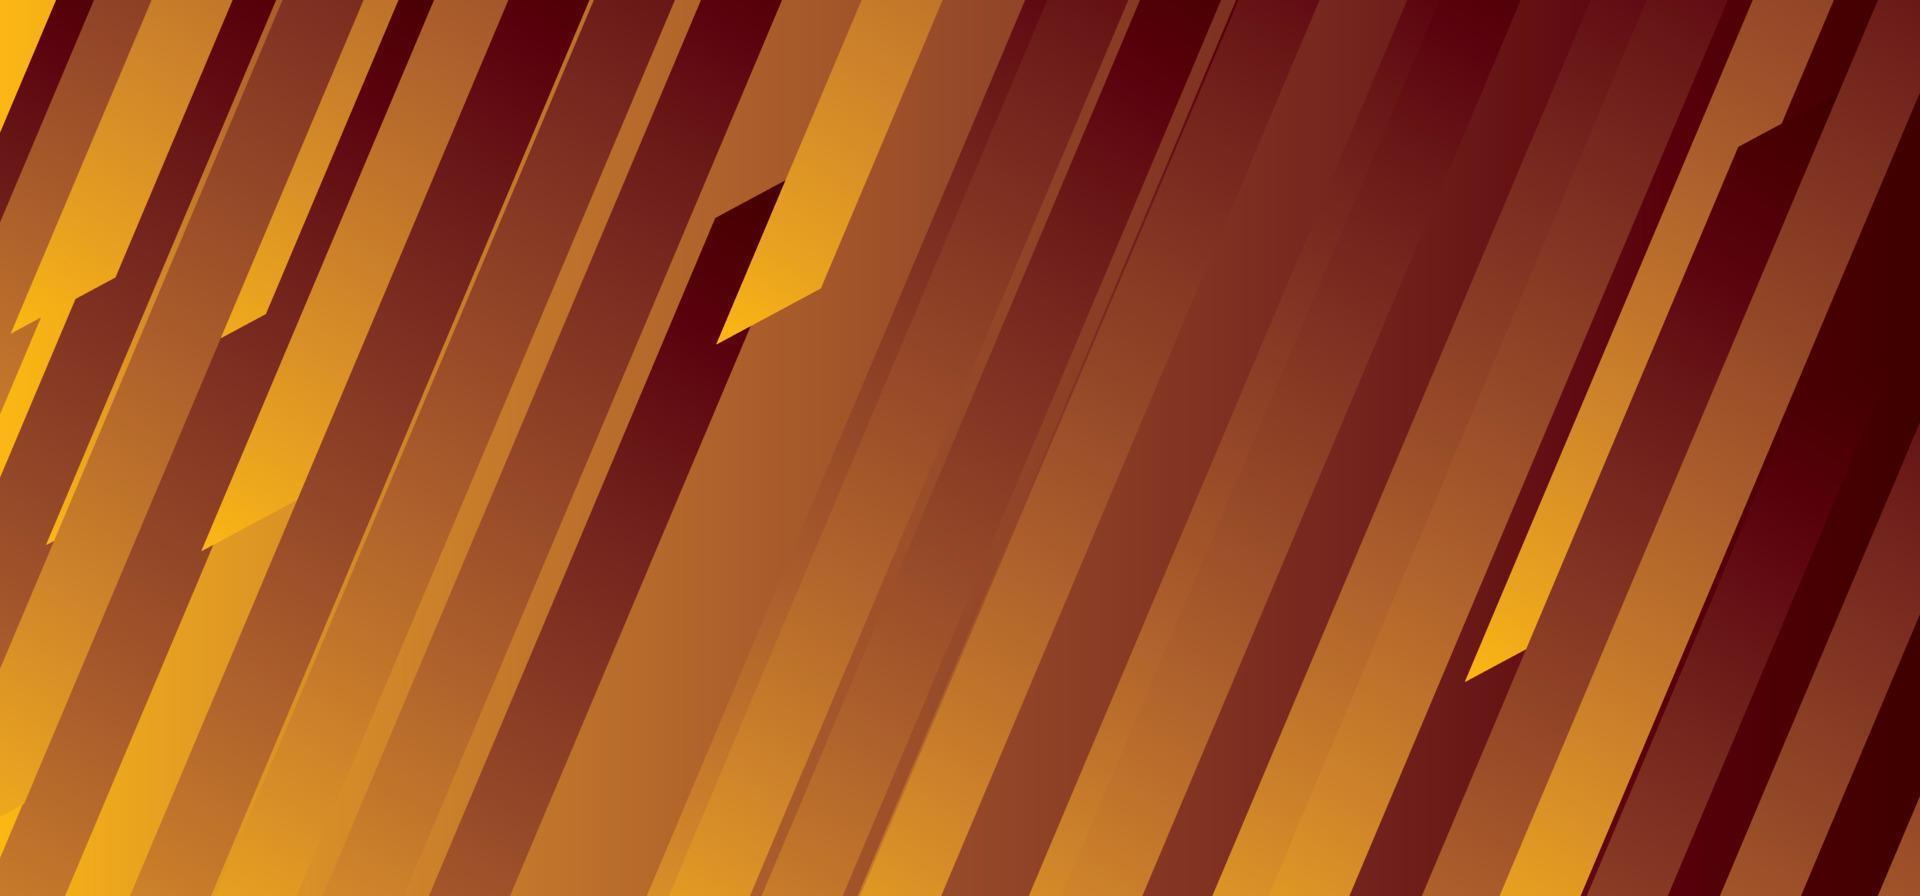 sfondo geometrico astratto arancione vettore